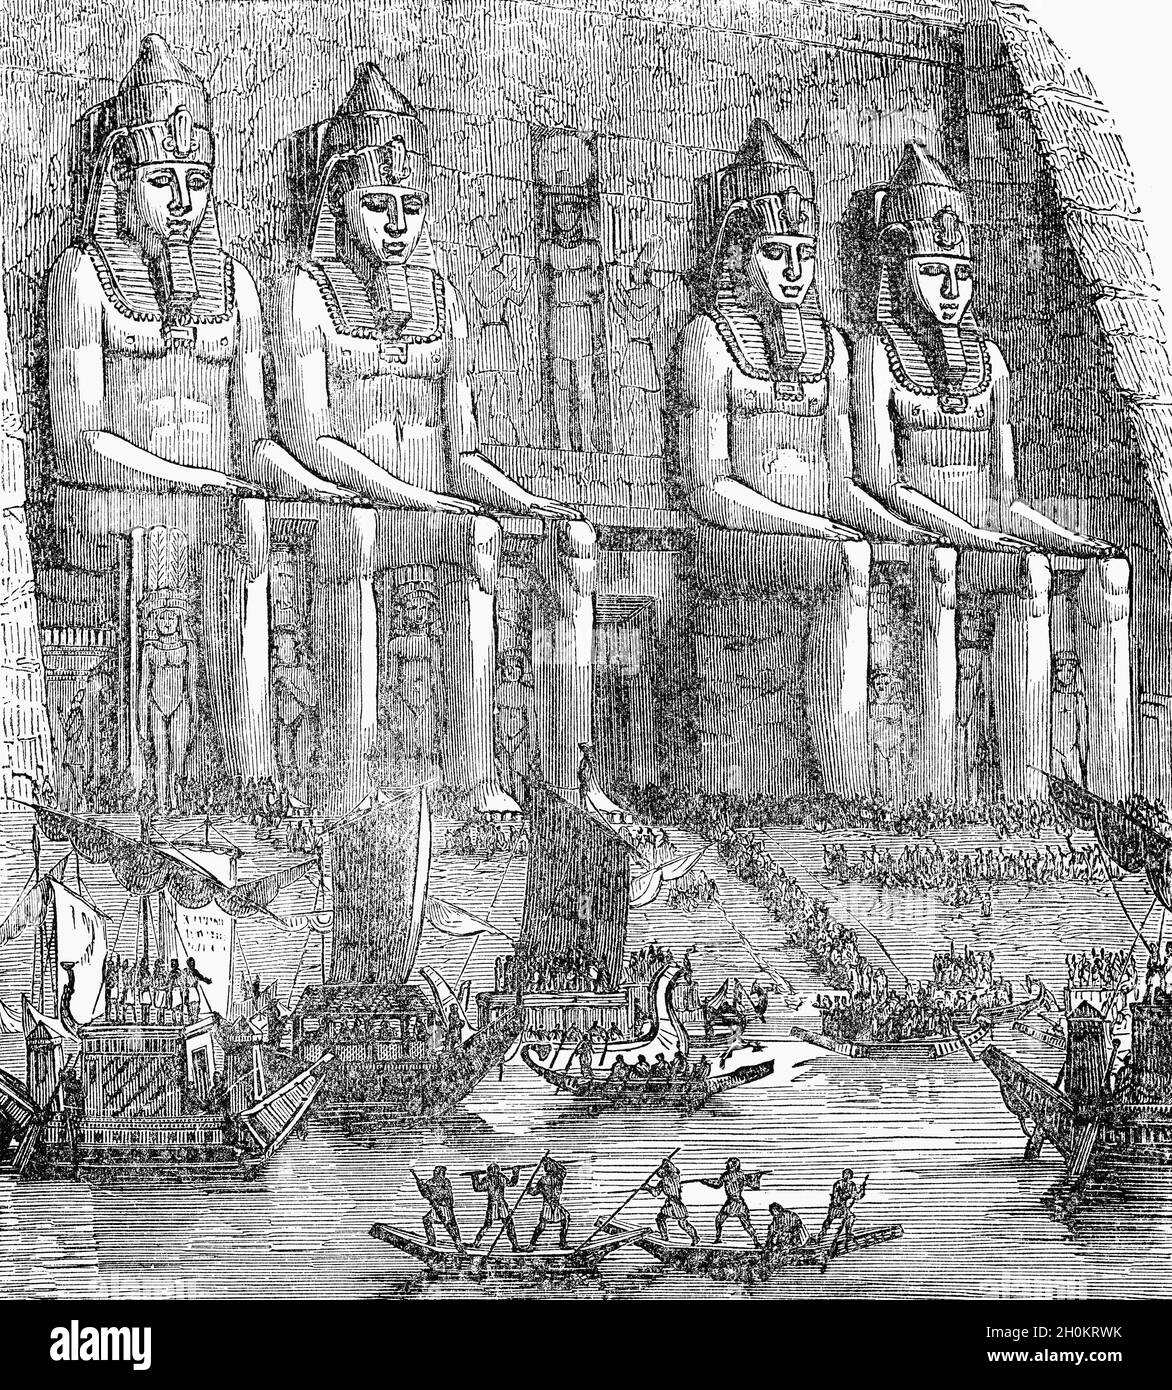 Une illustration de la fin du XIXe siècle d'Abu Simbel est deux temples massifs de roche dans le village d'Abu Simbel en haute-Égypte sur la rive du Nil.Temples jumeaux, ils ont été à l'origine sculptés hors du flanc de montagne au 13ème siècle avant JC, pendant le 19ème règne de la dynastie des Ramesses Pharaon IIIls servent de monument durable au roi Ramsès IISa femme Nefertari et ses enfants peuvent être vus en plus petits chiffres par ses pieds, considérés comme étant de moindre importance et n'ont pas reçu la même position d'échelle. Banque D'Images